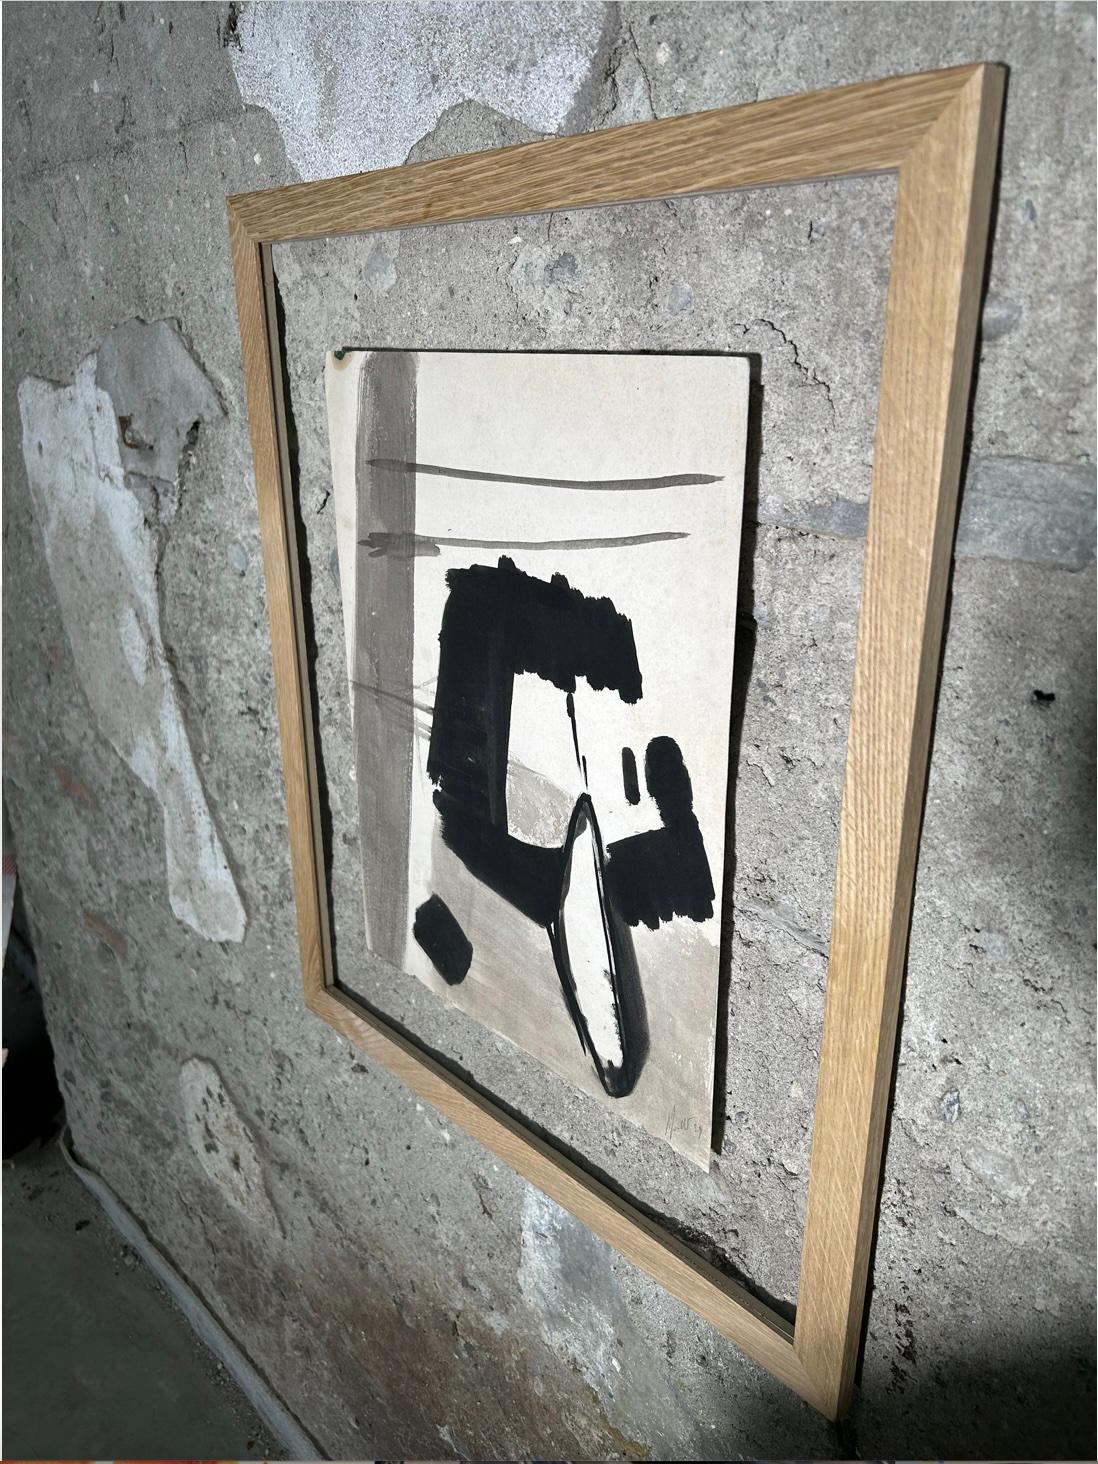 Gemälde auf Leinwand von Jean Miotte aus dem Jahr 1959
Abstrakte Komposition in Tusche auf Leinwand ohne Rahmen (gerollt verschickt).
Datiert und signiert vom Künstler.

Ungerahmt: 42,5 x 33 x 1,5 cm